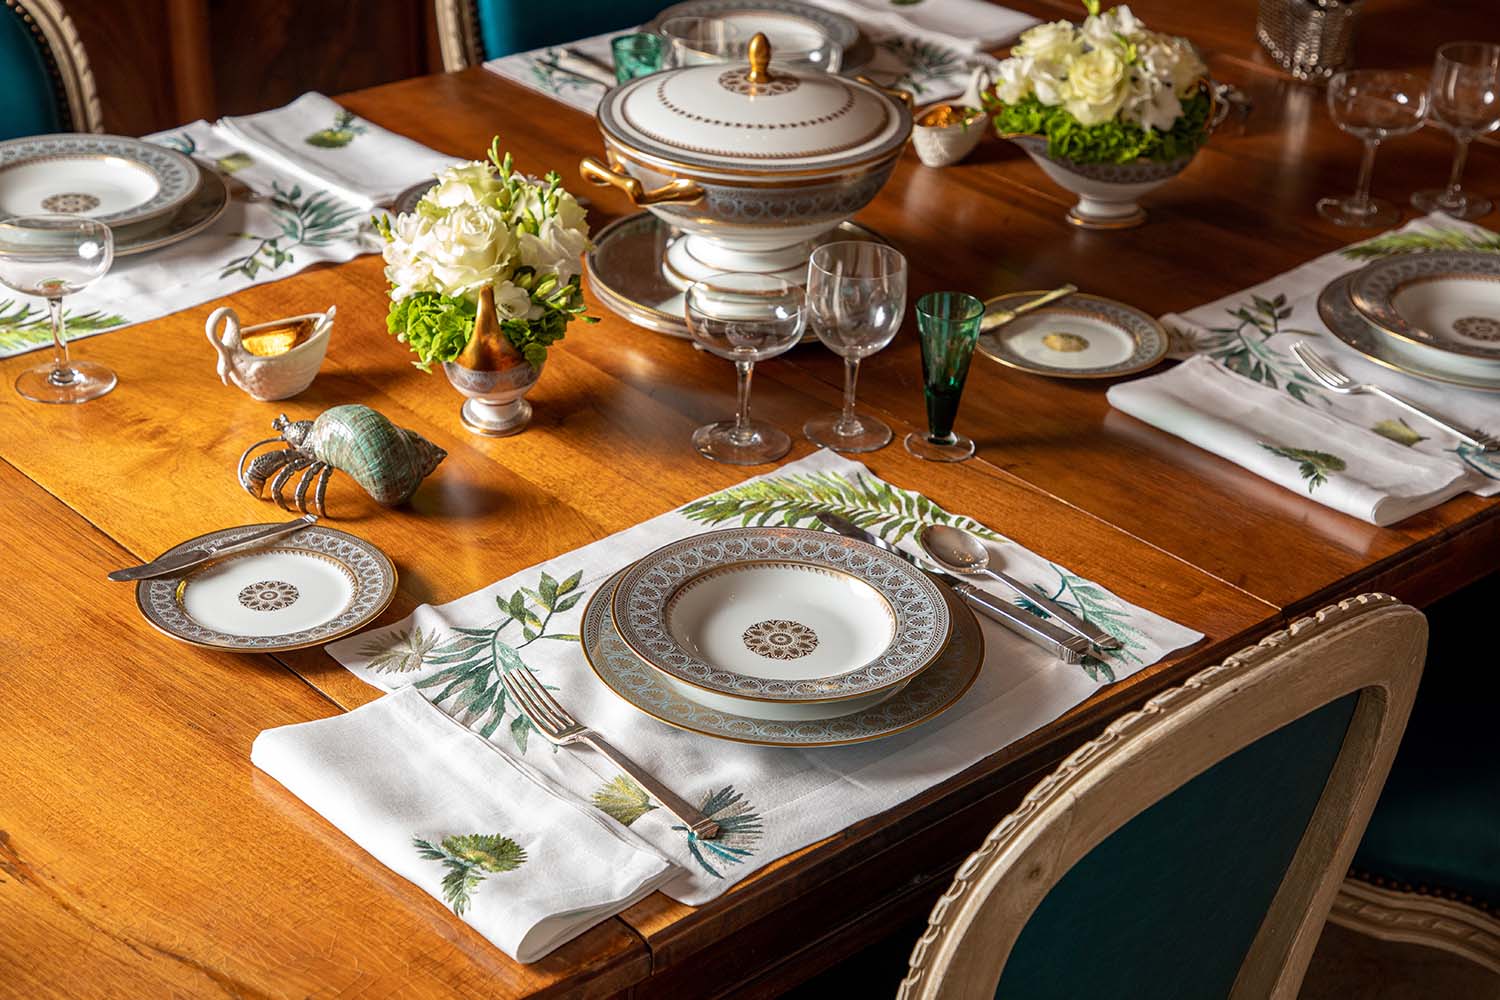 Table is set with tempête tropicale linen set.